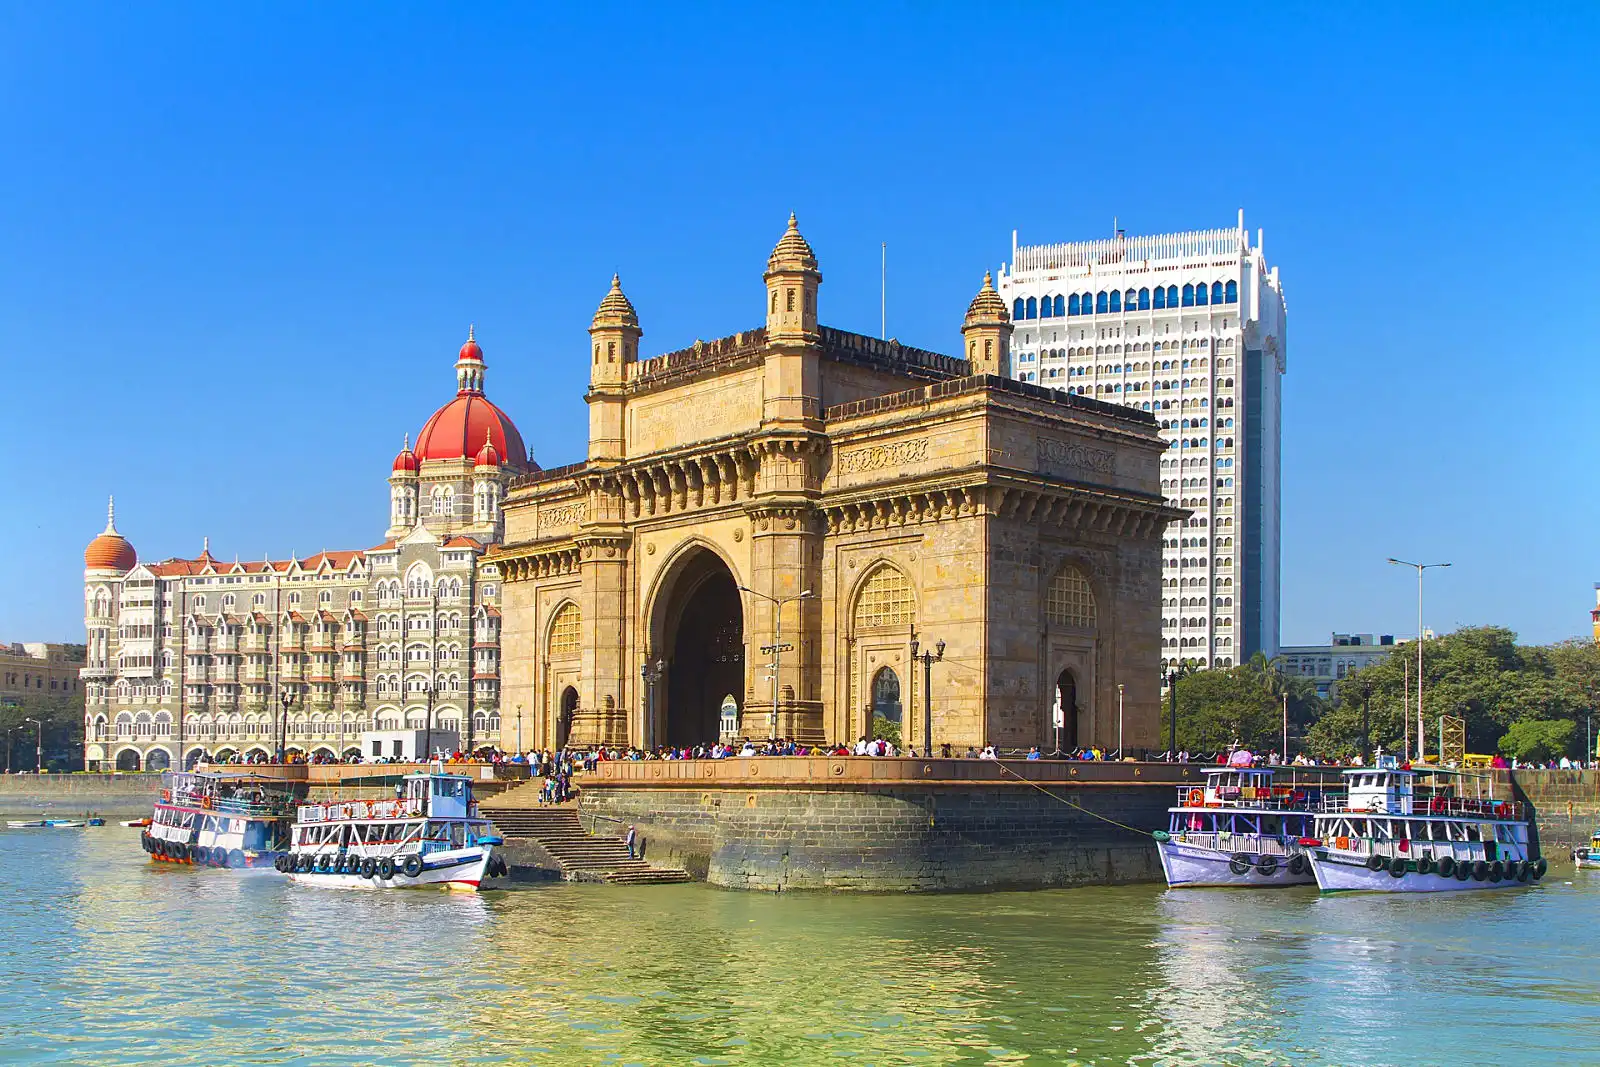 Mumbai tourism